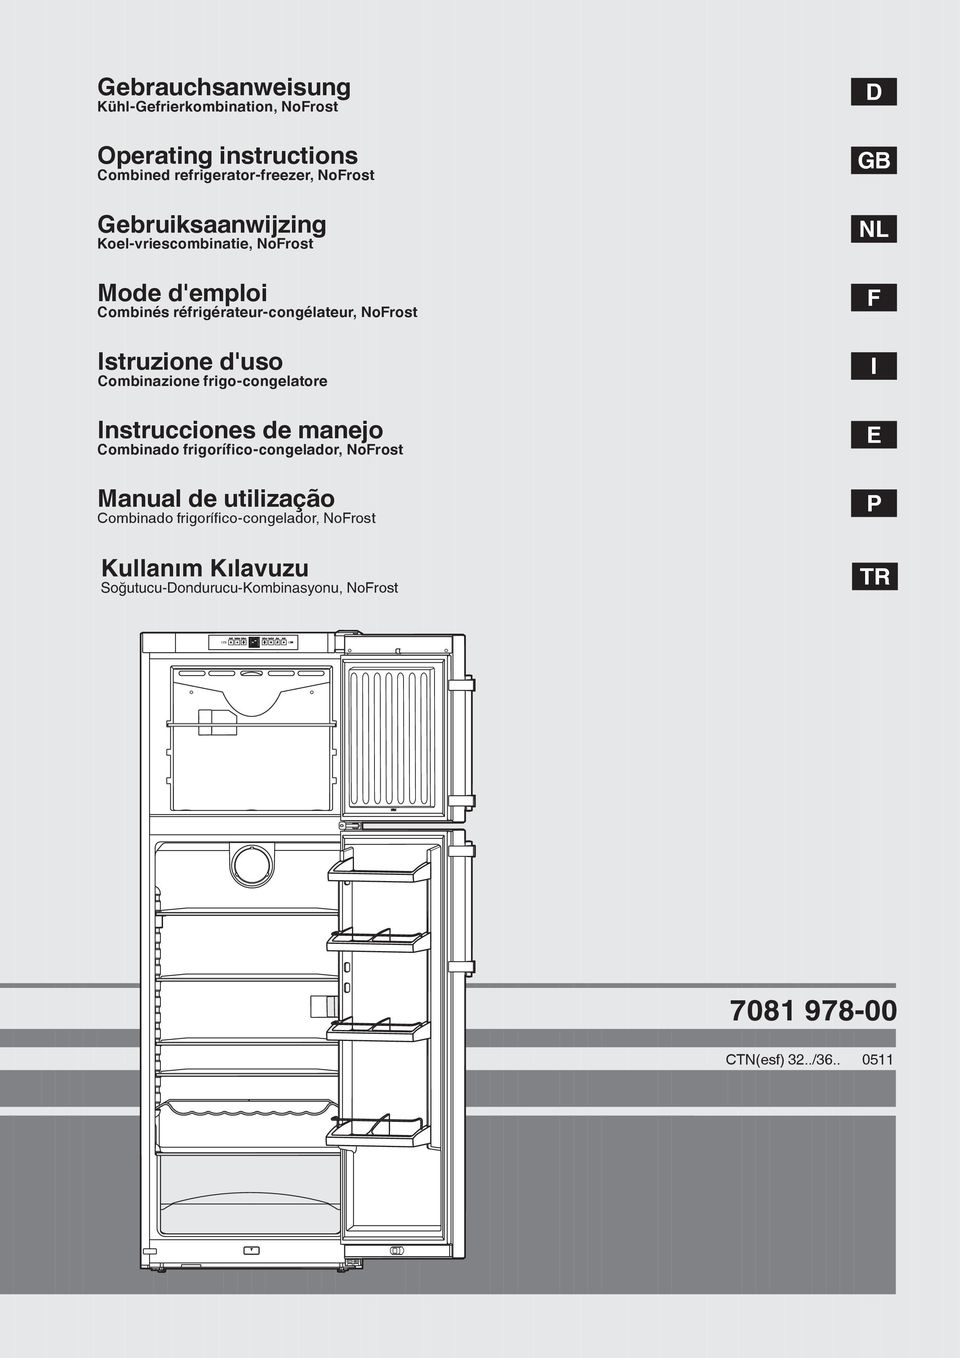 NoFrost Istruzione d'uso Combinazione frigo-congelatore Instrucciones de manejo Combinado frigorífico-congelador, NoFrost Manual de